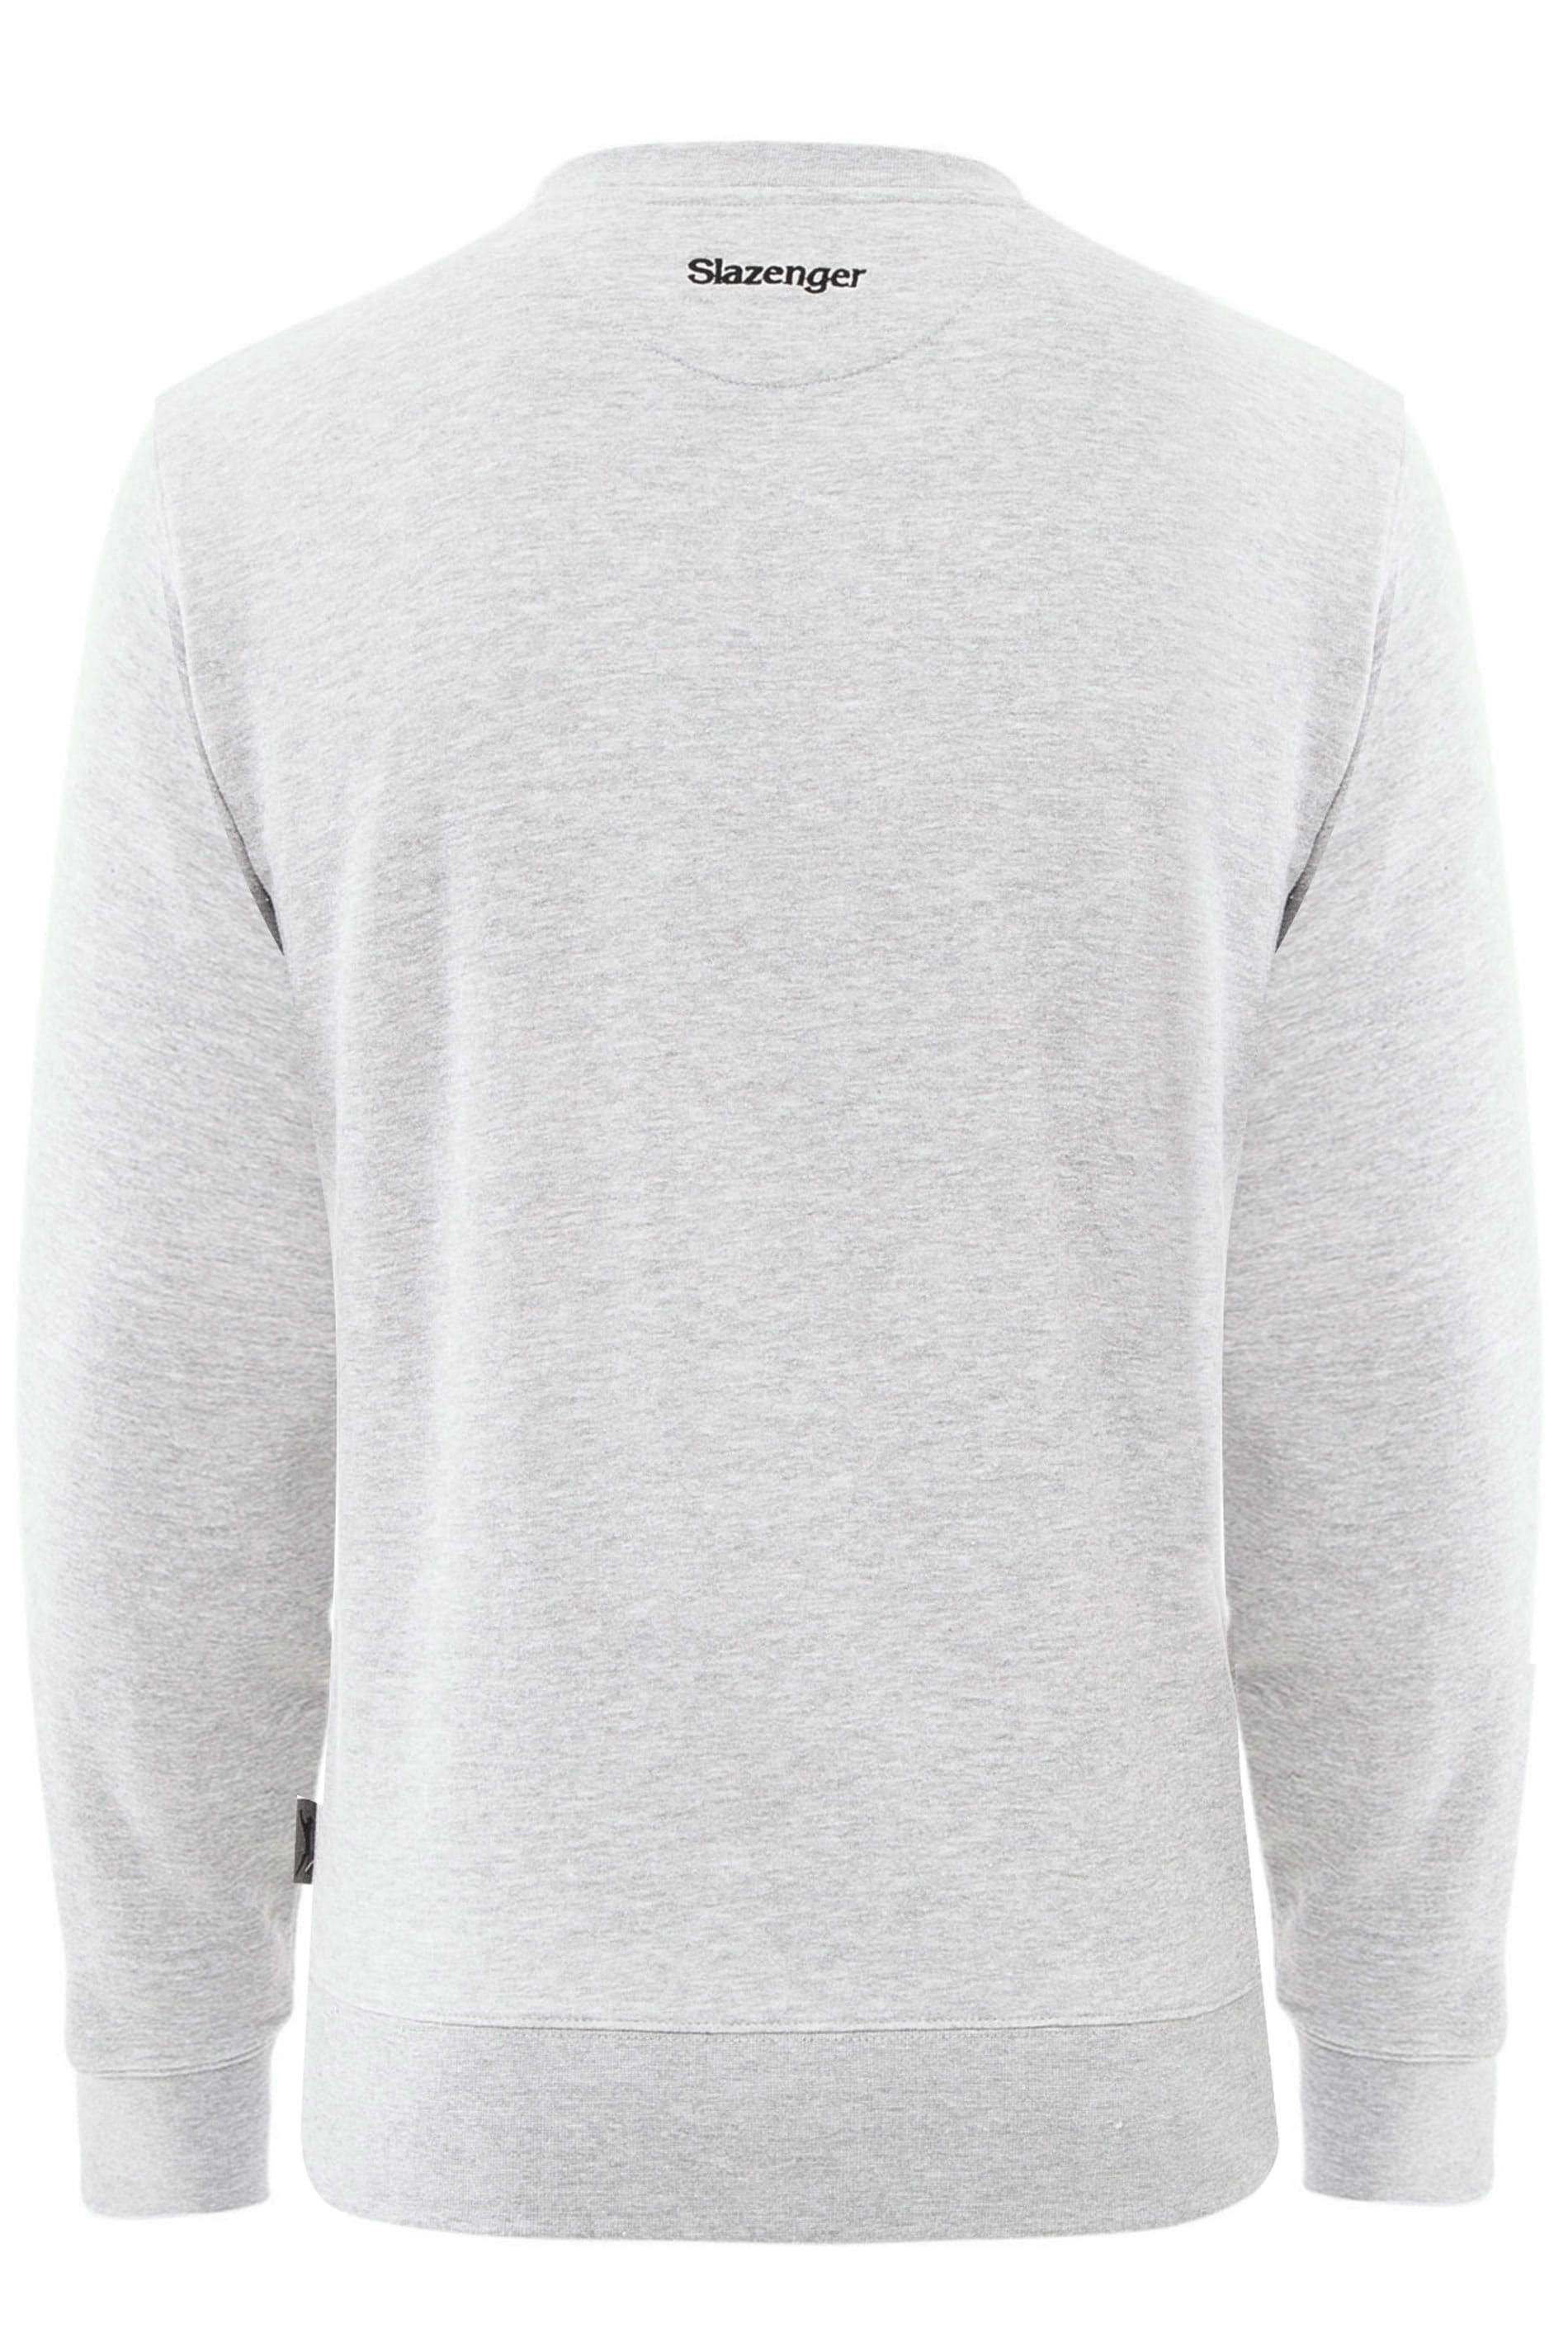 SLAZENGER Grey Marl Logo Sweatshirt | BadRhino